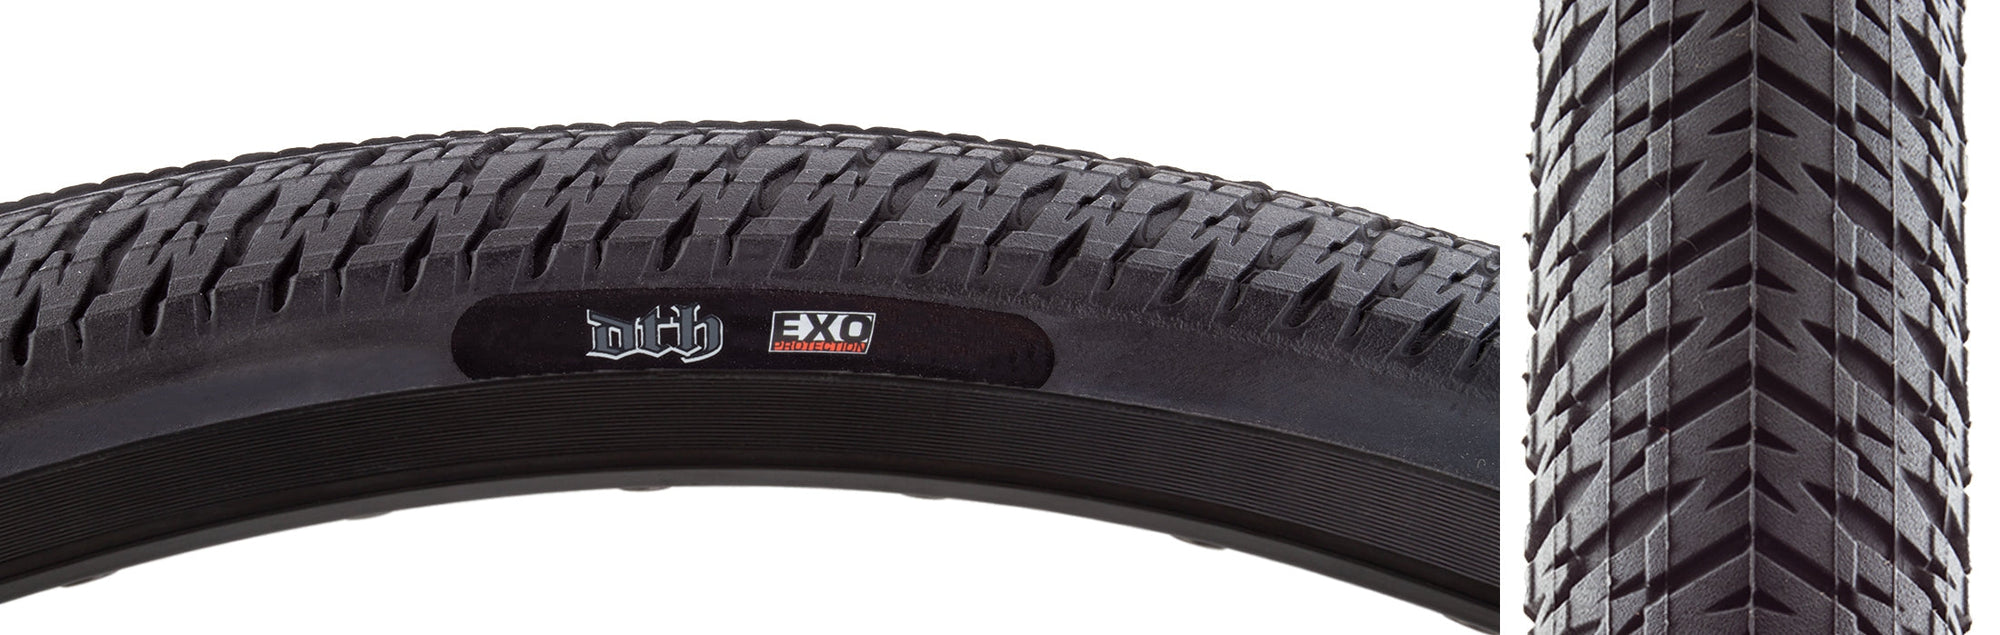 20x1.75 Maxxis DTH Folding Tire - All Black